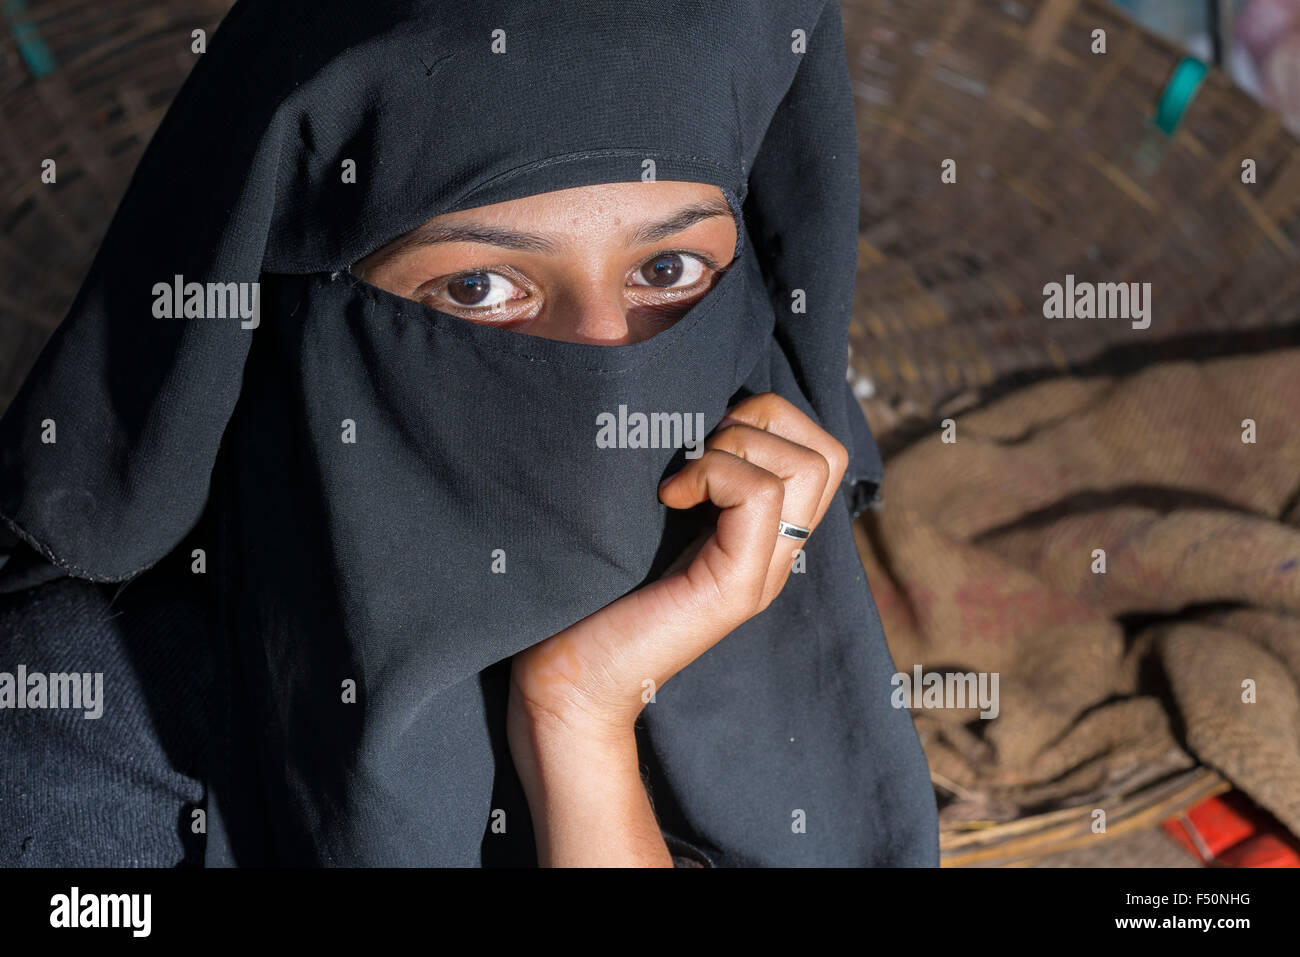 Une jeune femme musulmane, son visage couvert par un voile noir, hijab, vend des légumes sur le marché Banque D'Images